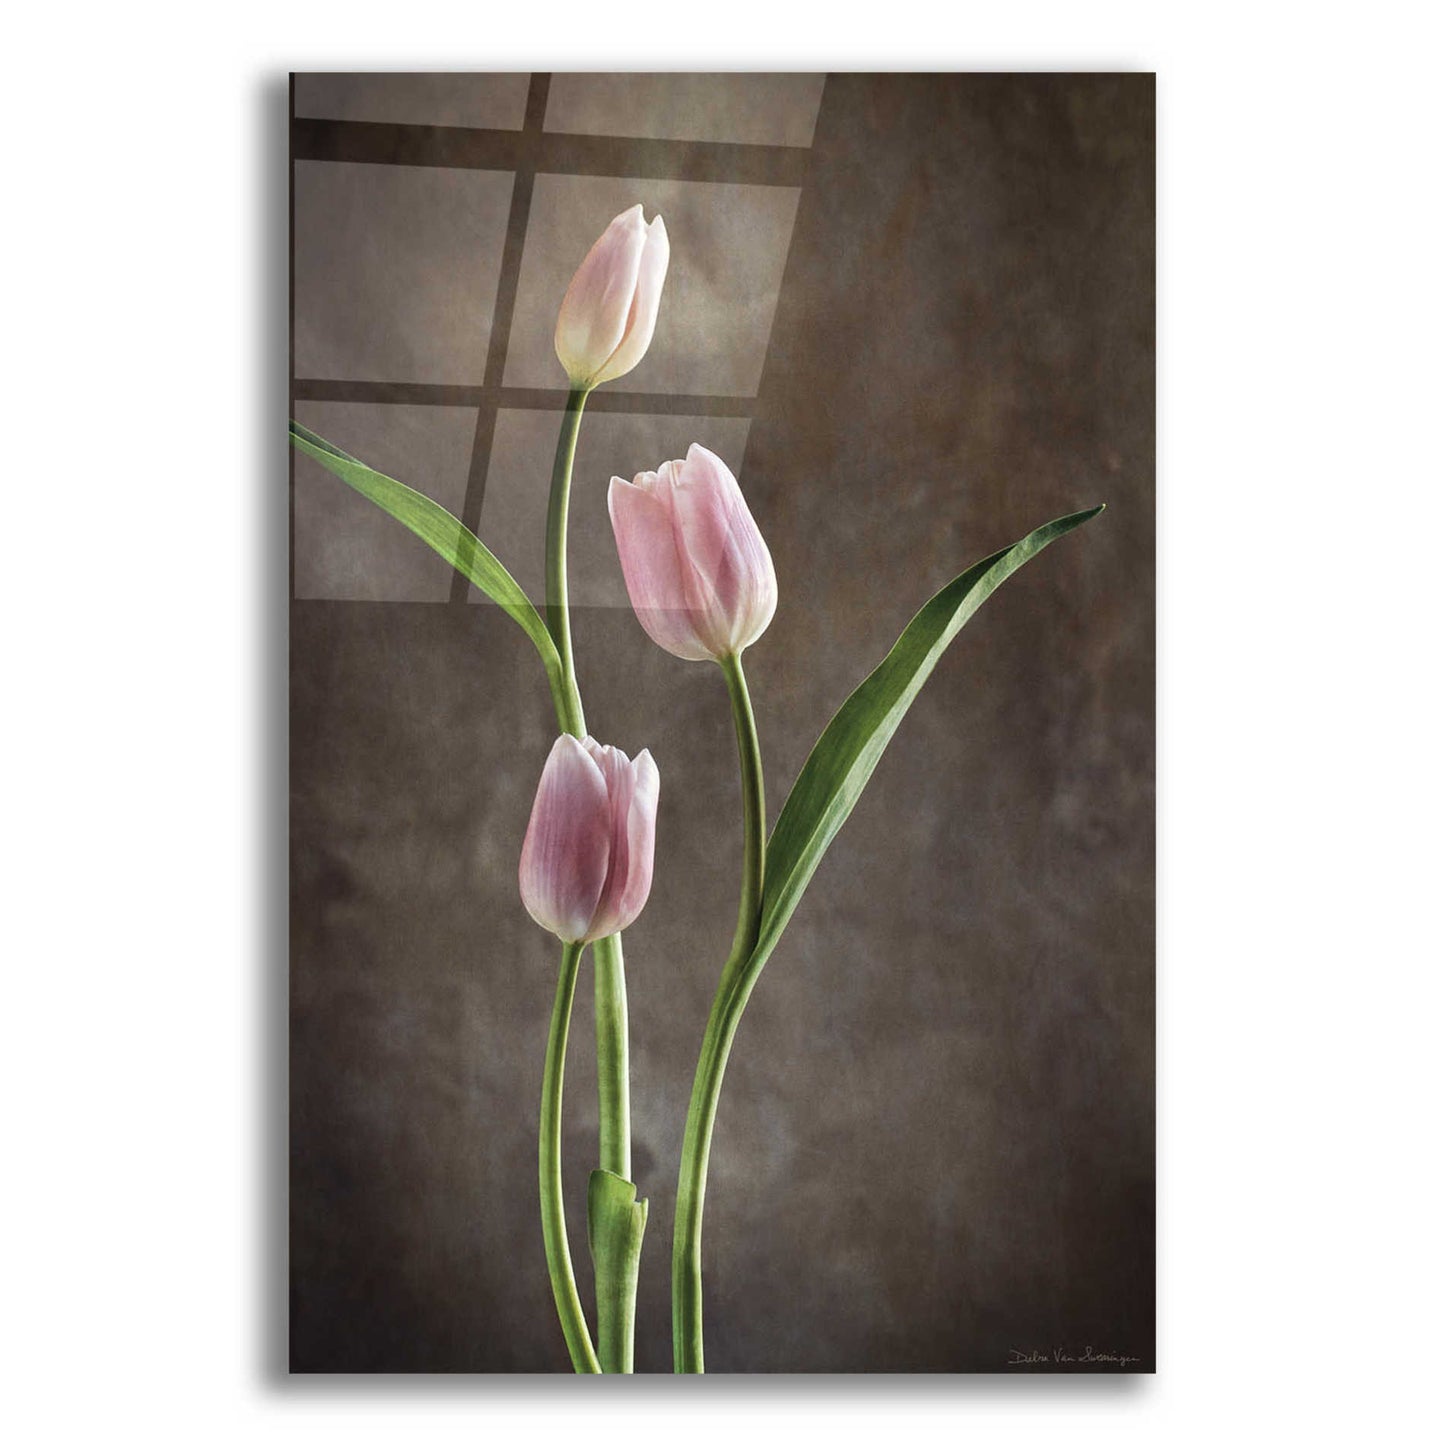 Epic Art 'Spring Tulips VIII' by Debra Van Swearingen, Acrylic Glass Wall Art,12x18x1.1x0,18x26x1.1x0,26x40x1.74x0,40x60x1.74x0